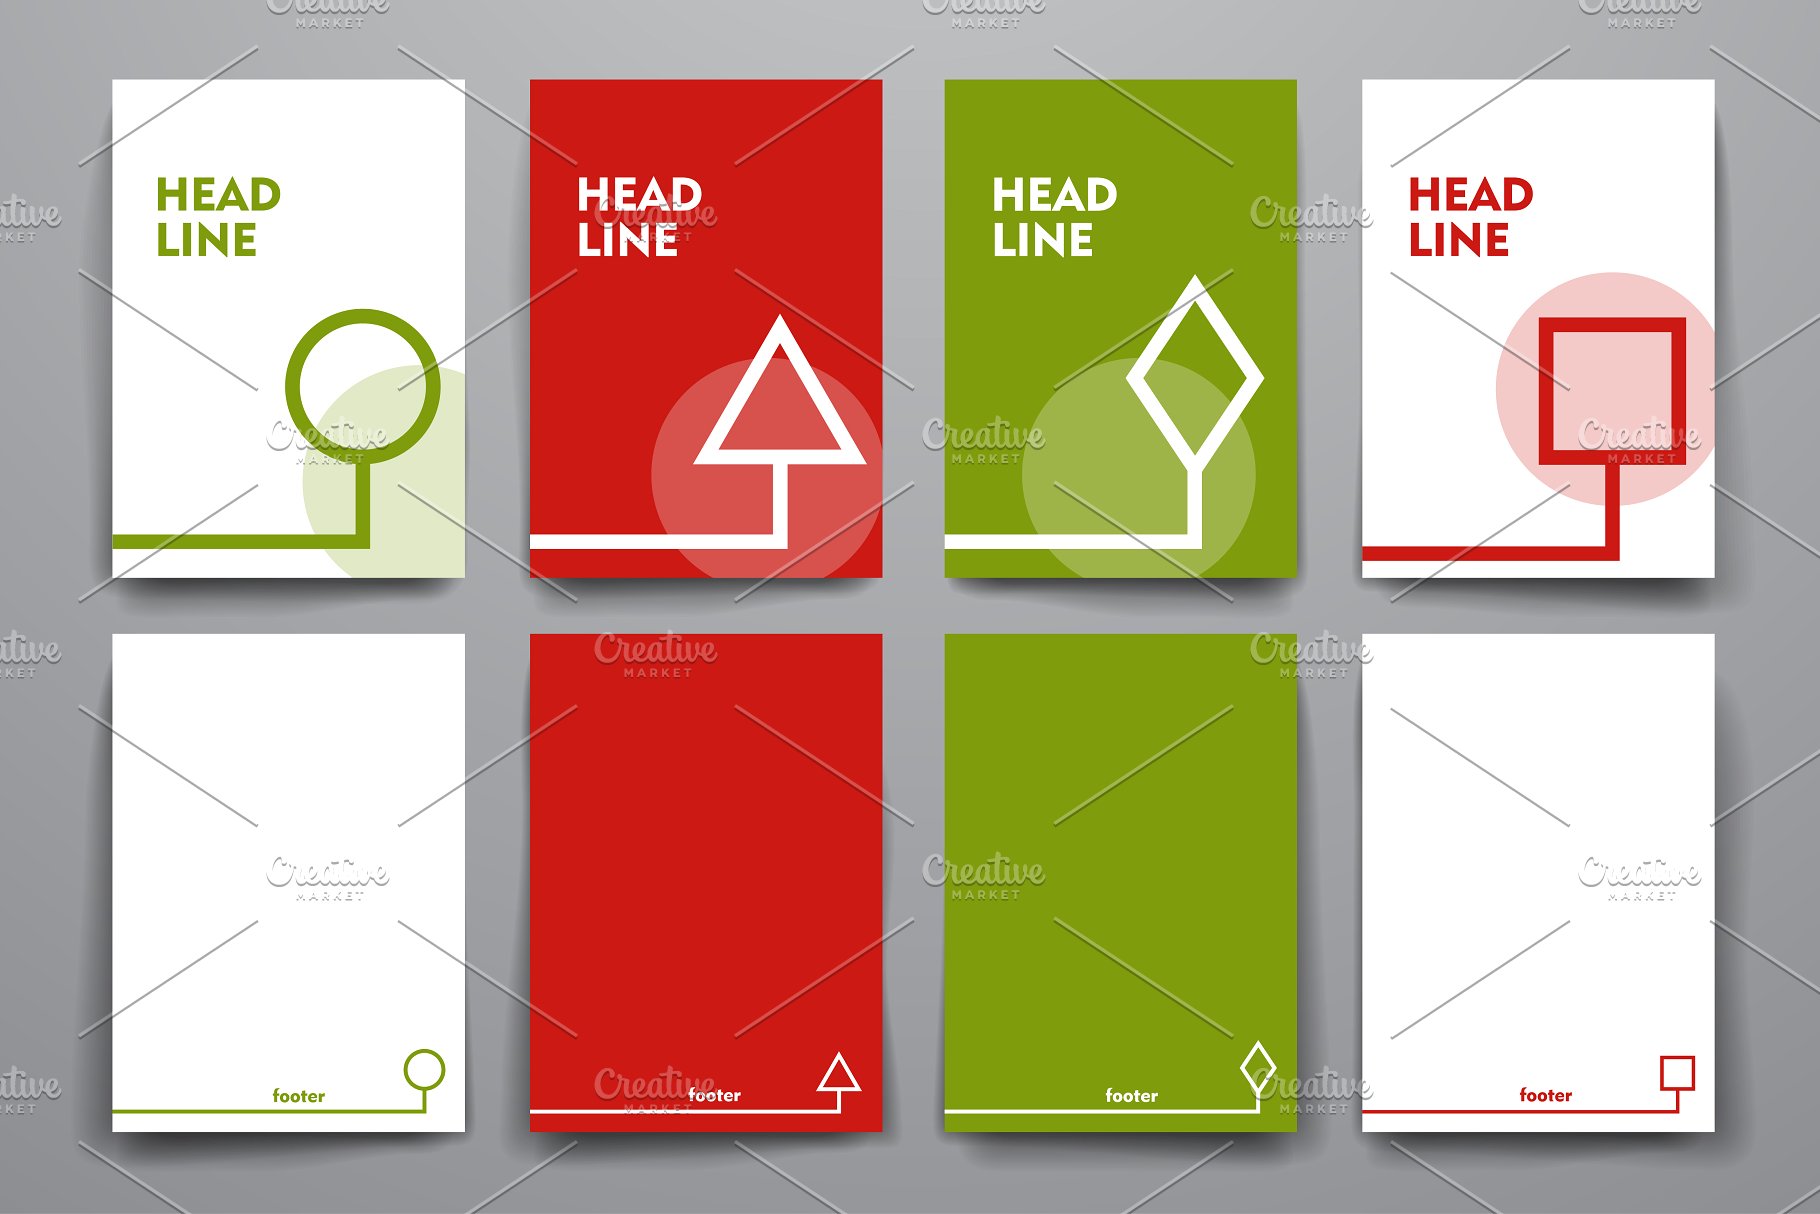 简约小册子传单设计模板 Set of Simple Brochures插图(4)